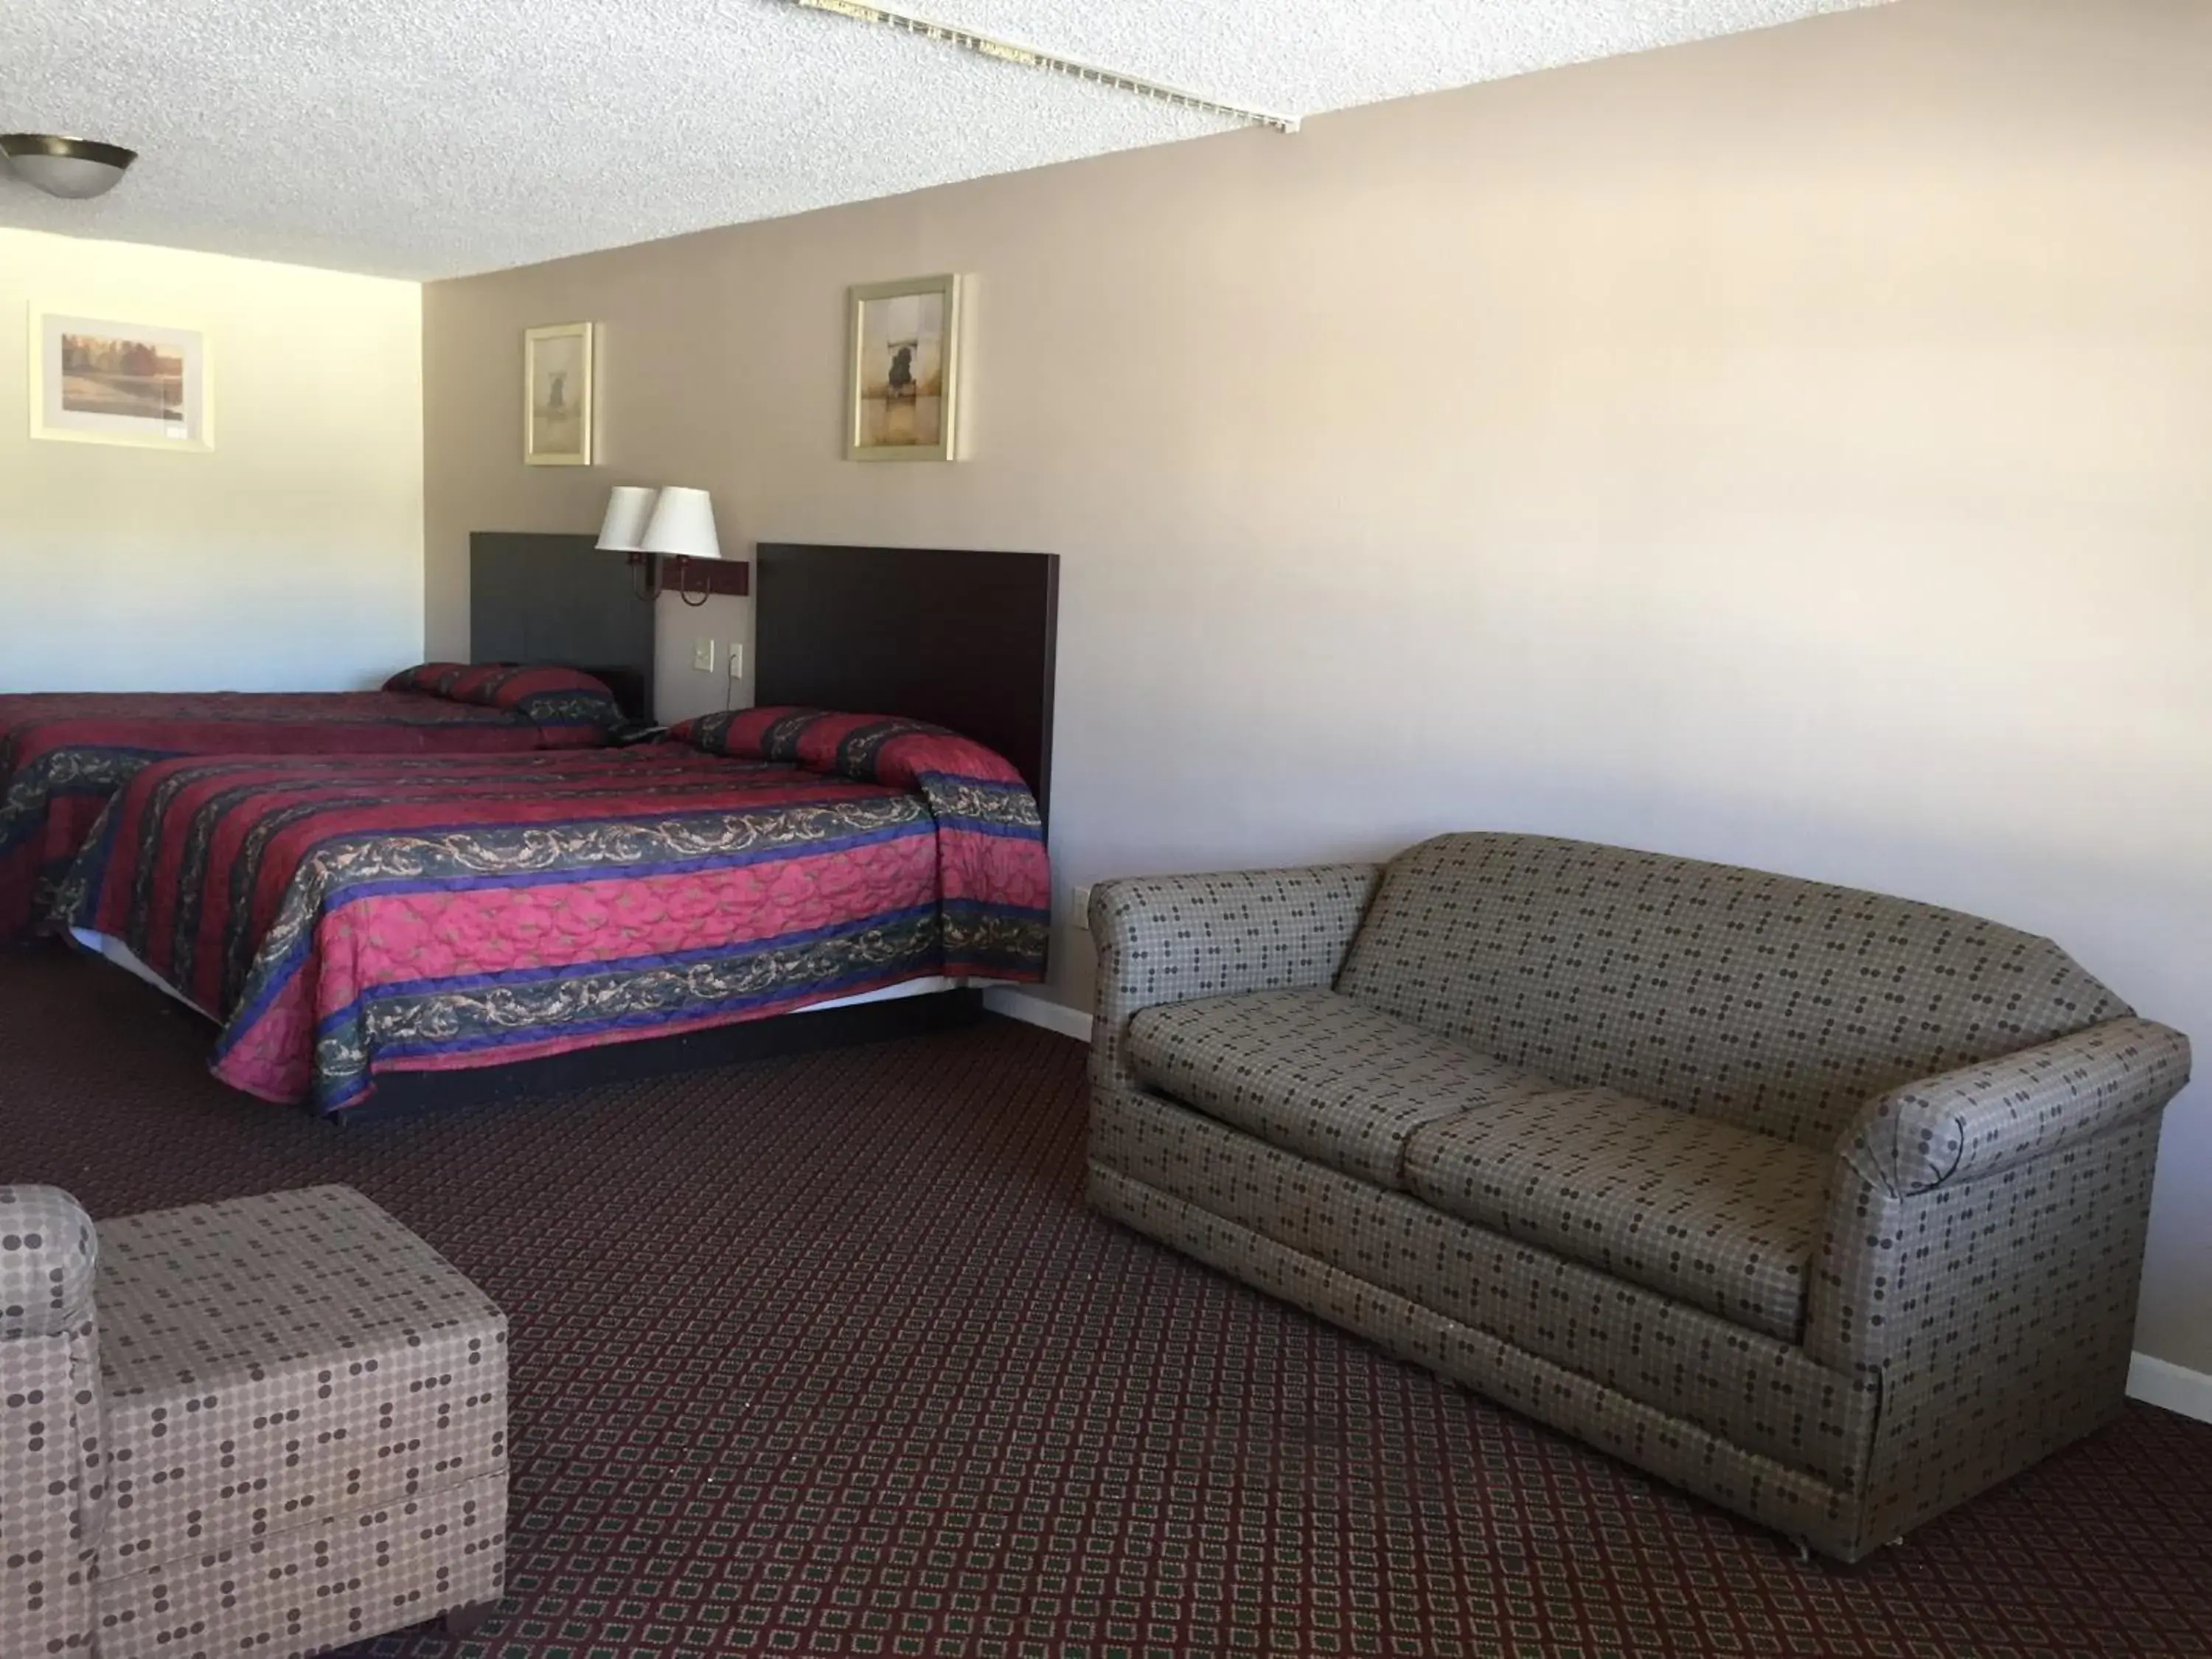 Bedroom, Room Photo in Royal Inn Abilene